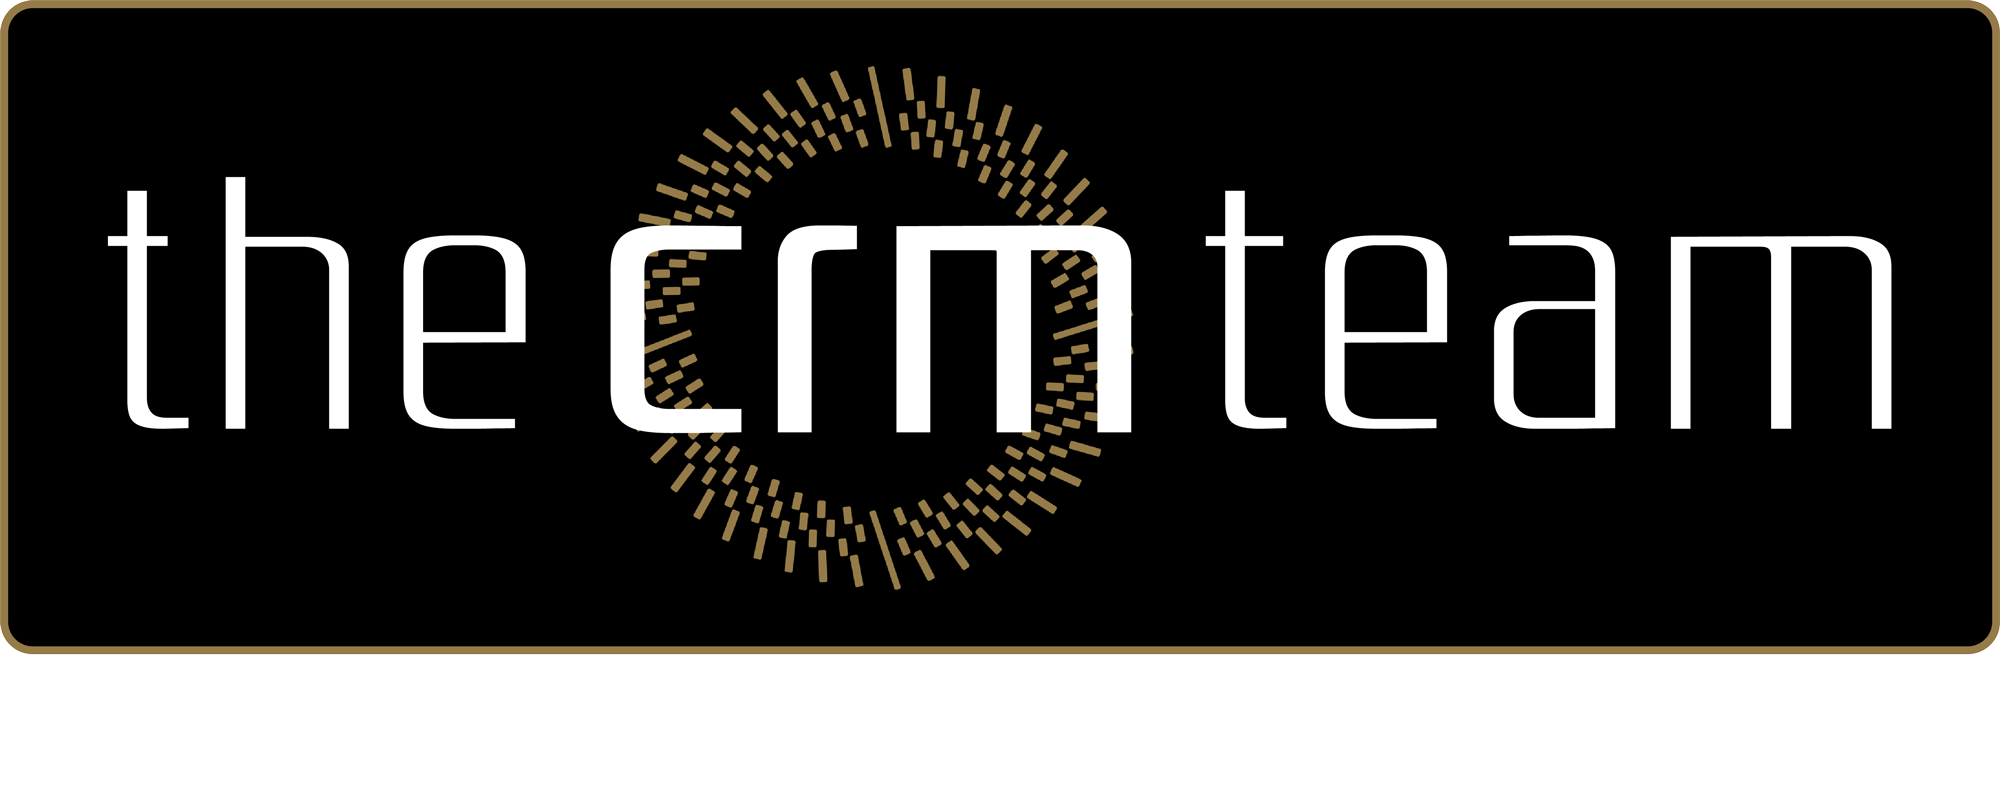 The crm team logo